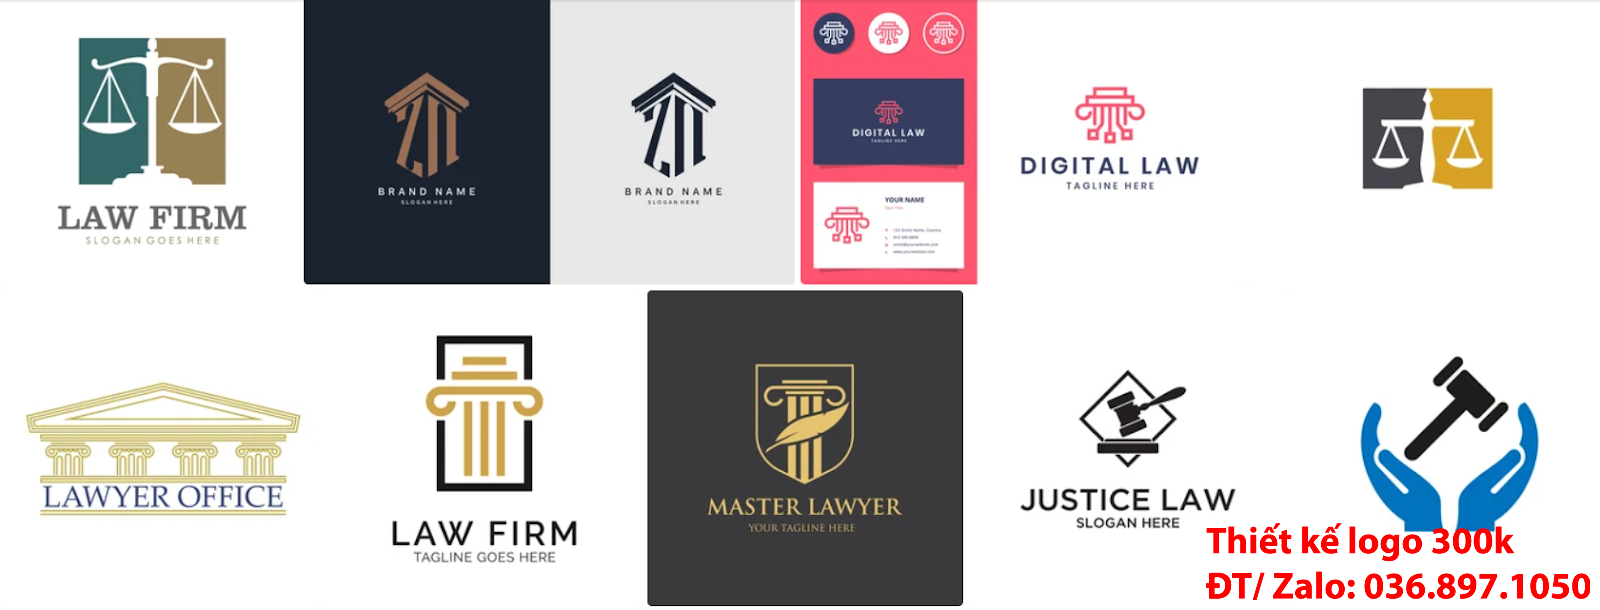 Công ty nhận thiết kế các Mẫu logo đẹp công ty luật sư sáng tạo chuyên nghiệp giá rẻ tại Hà Nội